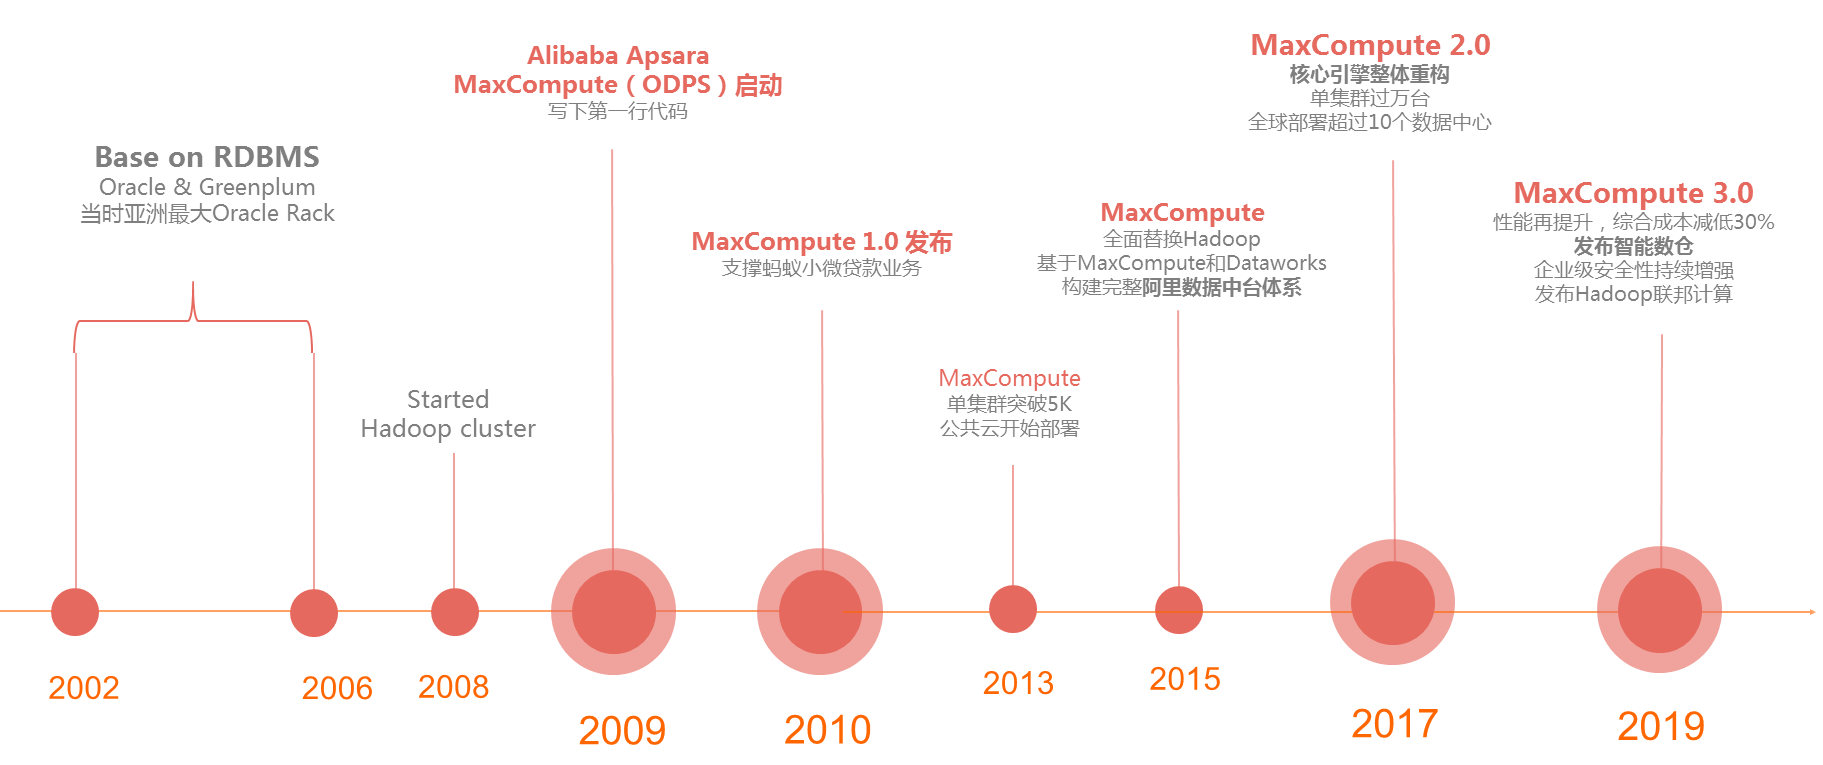 阿里巴巴飞天大数据平台MaxCompute（原名ODPS）全套攻略（持续更新20200109）